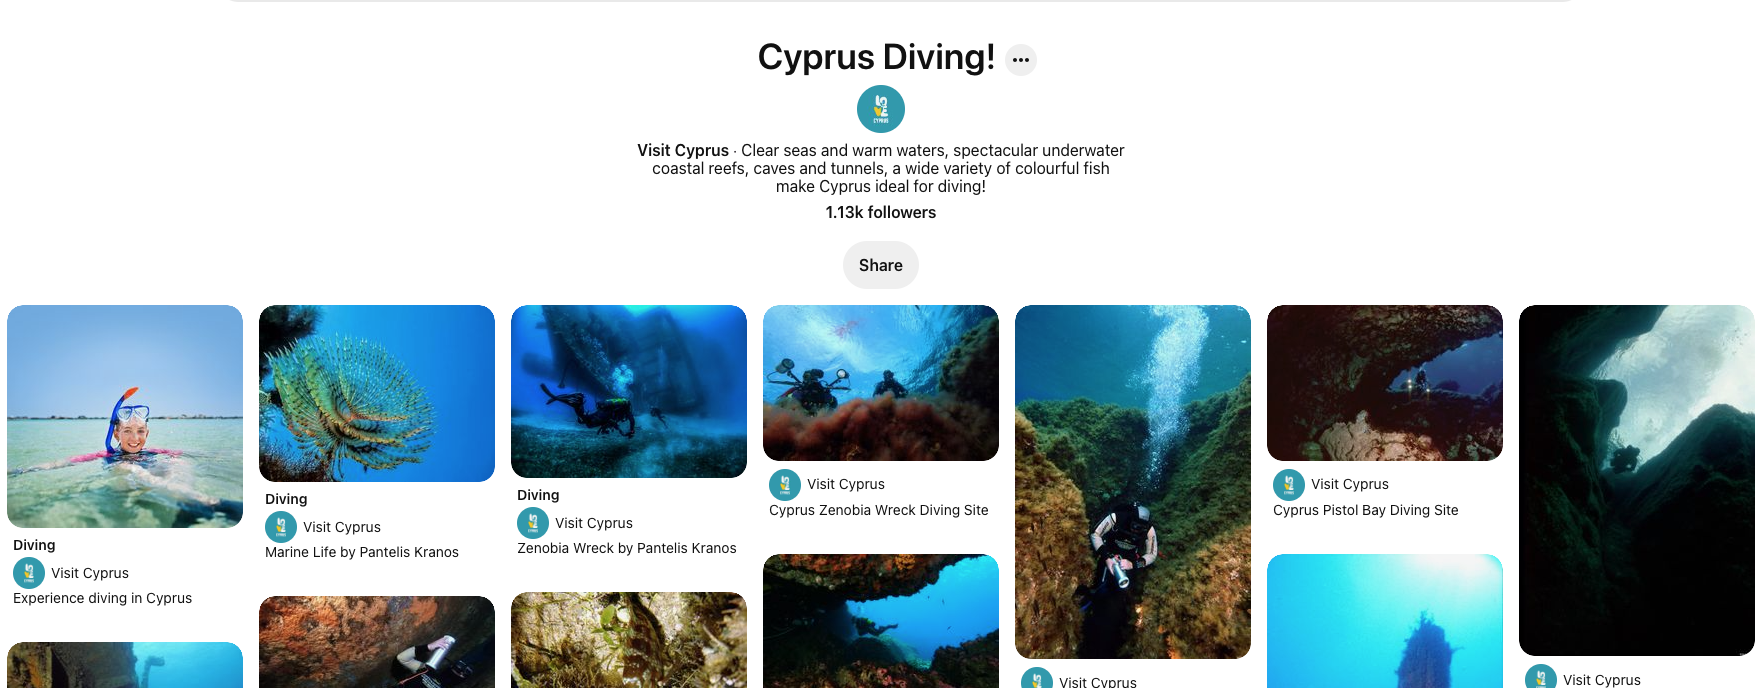 Visit Cyprus Pinterest Campaign 